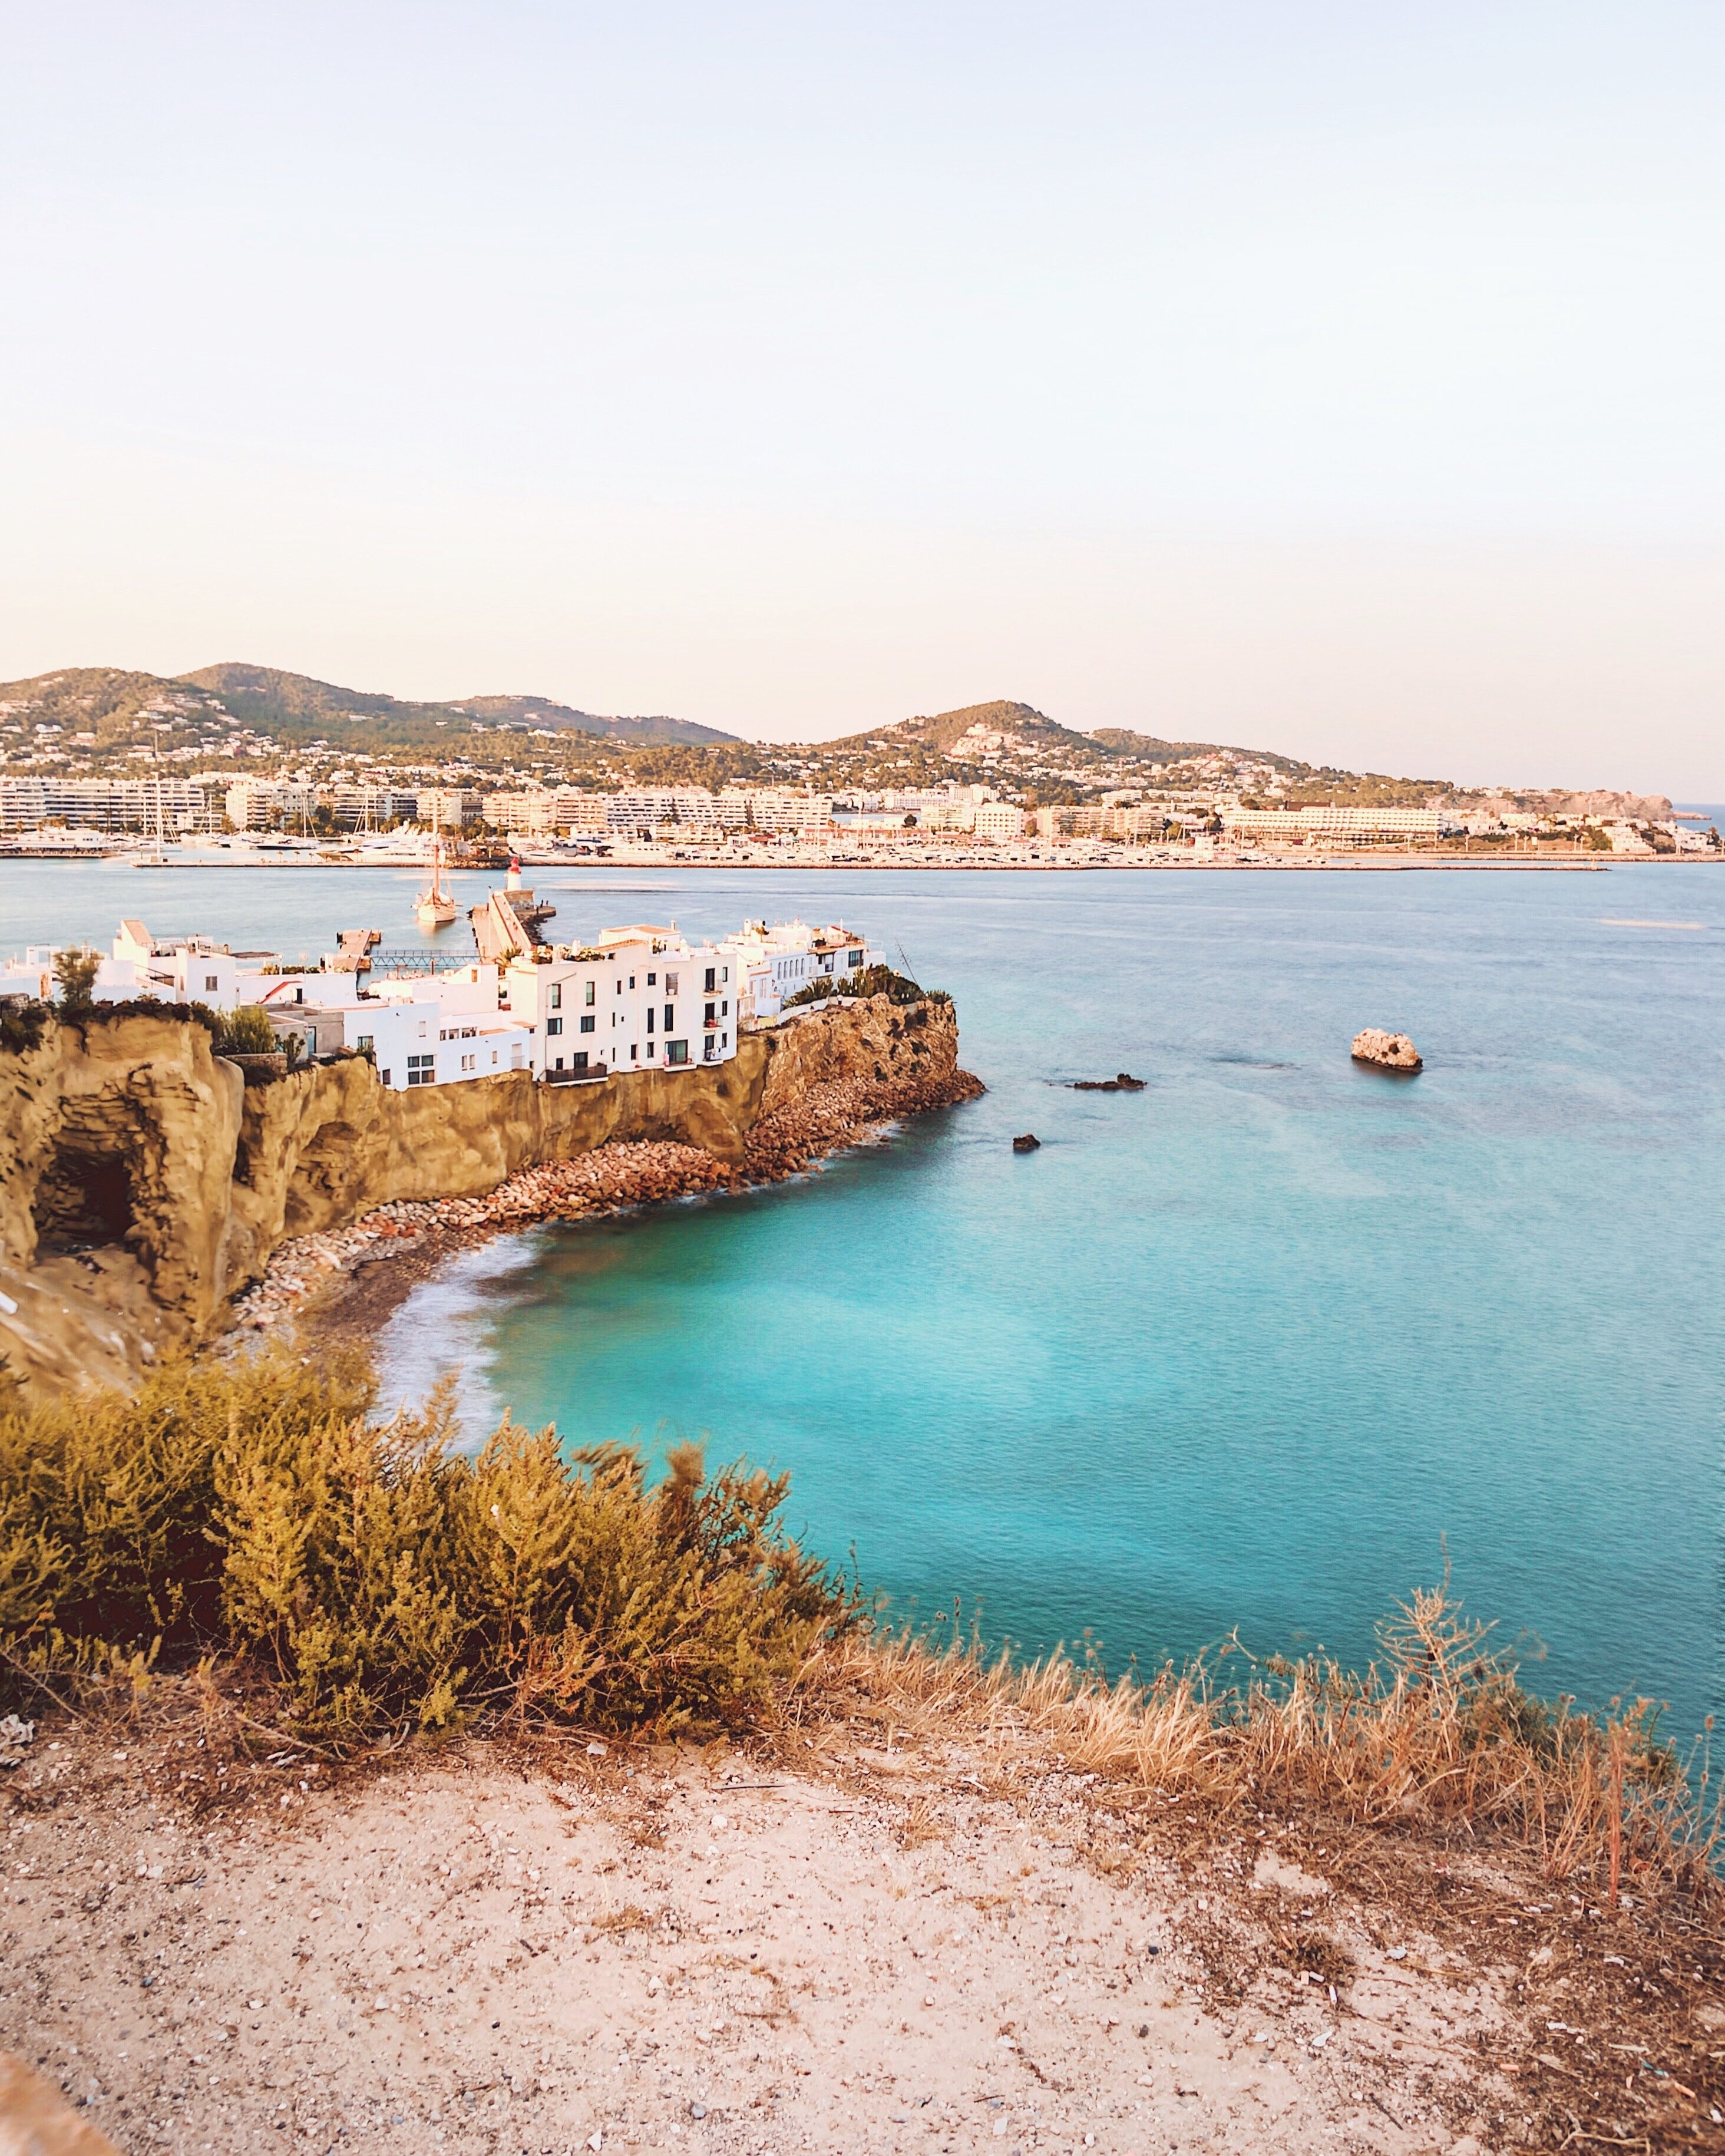 Ibiza, ese pedrusco salido del mar